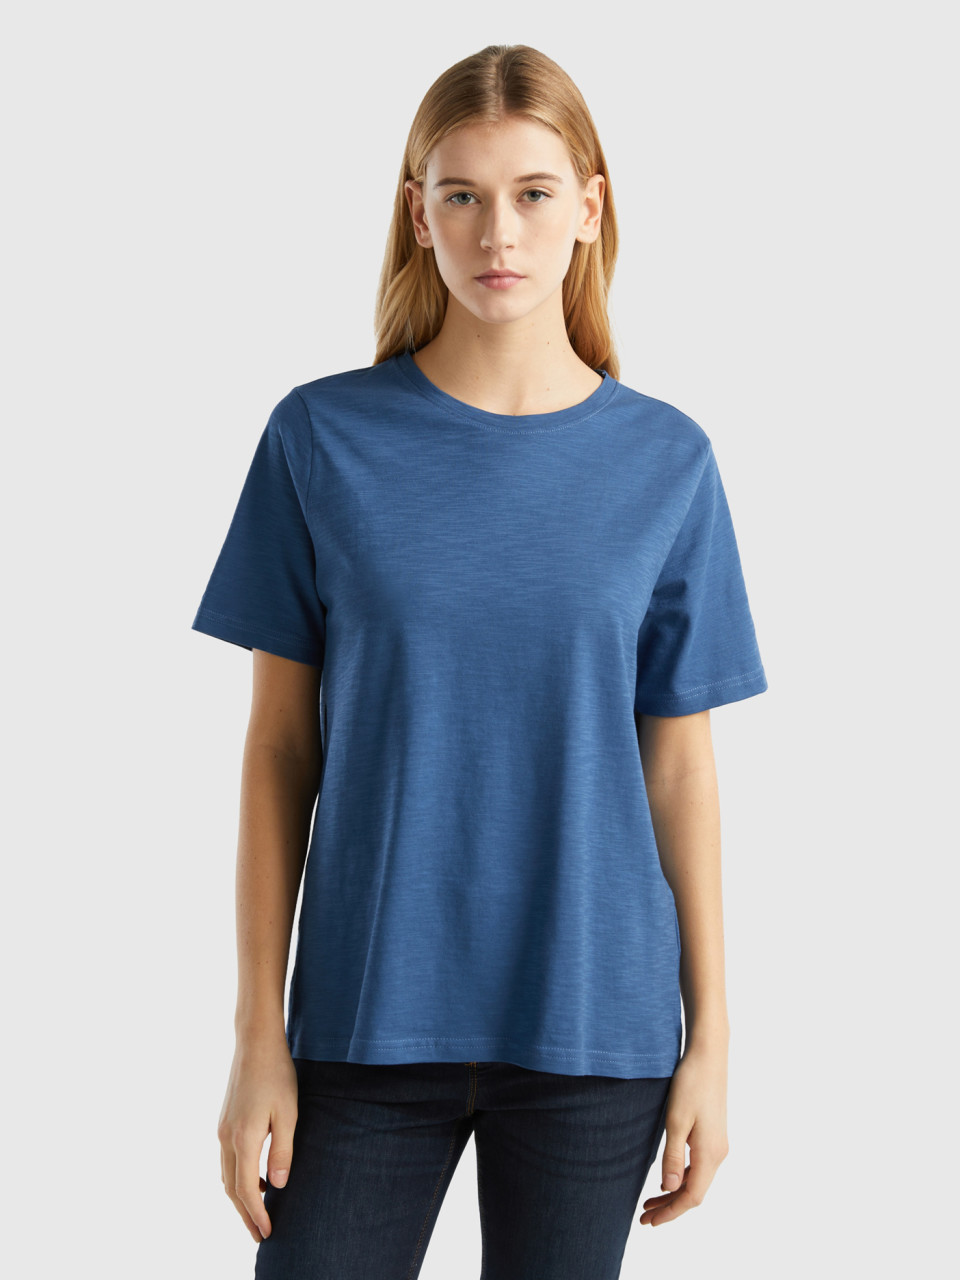 Benetton, Camiseta De Cuello Redondo De Algodón Flameado, Azul Grisáceo, Mujer